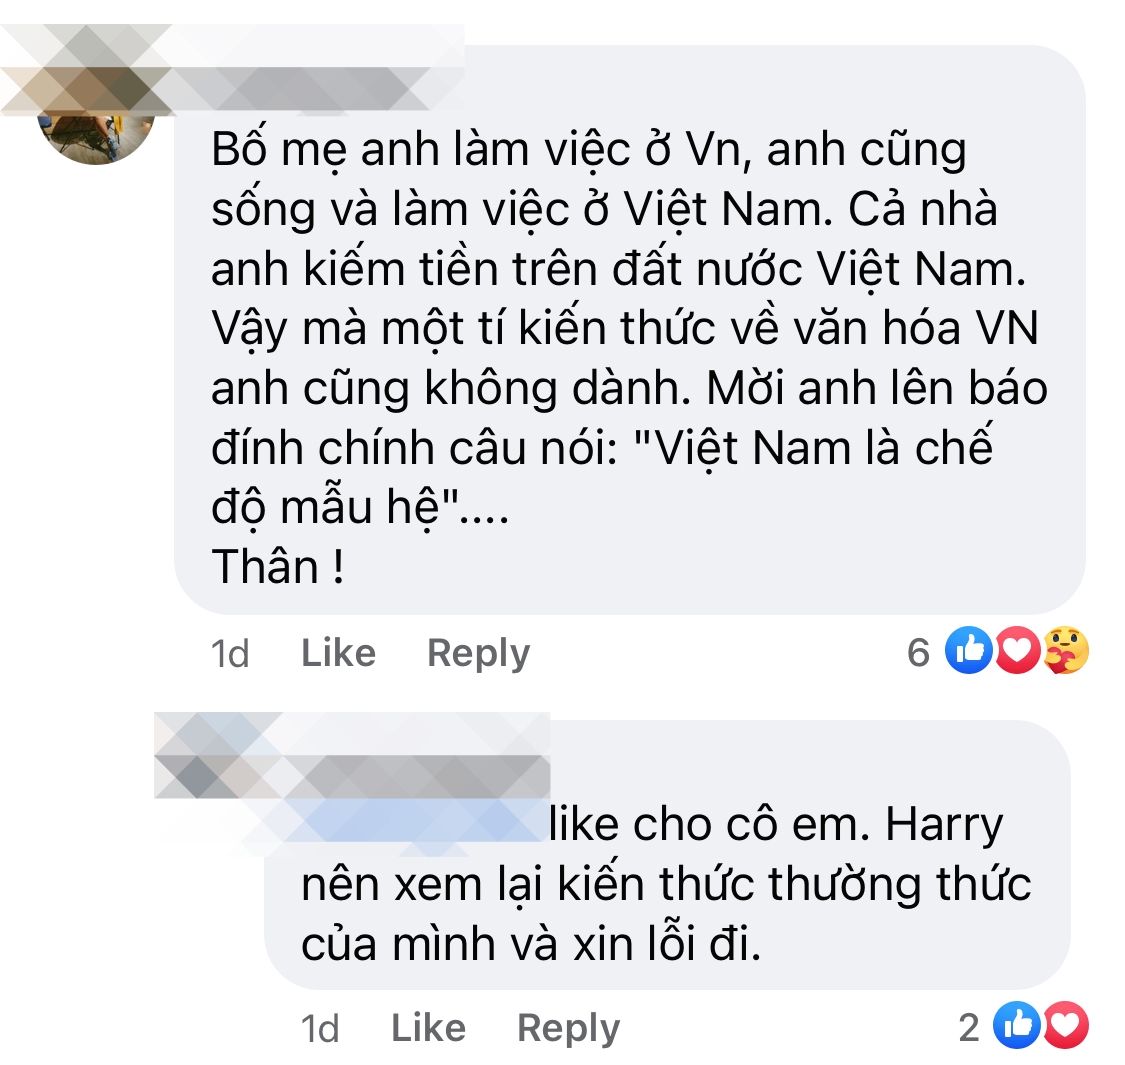 Harry Lu gây phẫn nộ khi phát biểu “Việt Nam theo chế độ mẫu hệ” trước truyền thông Đài Loan, bị yêu cầu xin lỗi ngay vì thiếu hiểu biết - Ảnh 5.